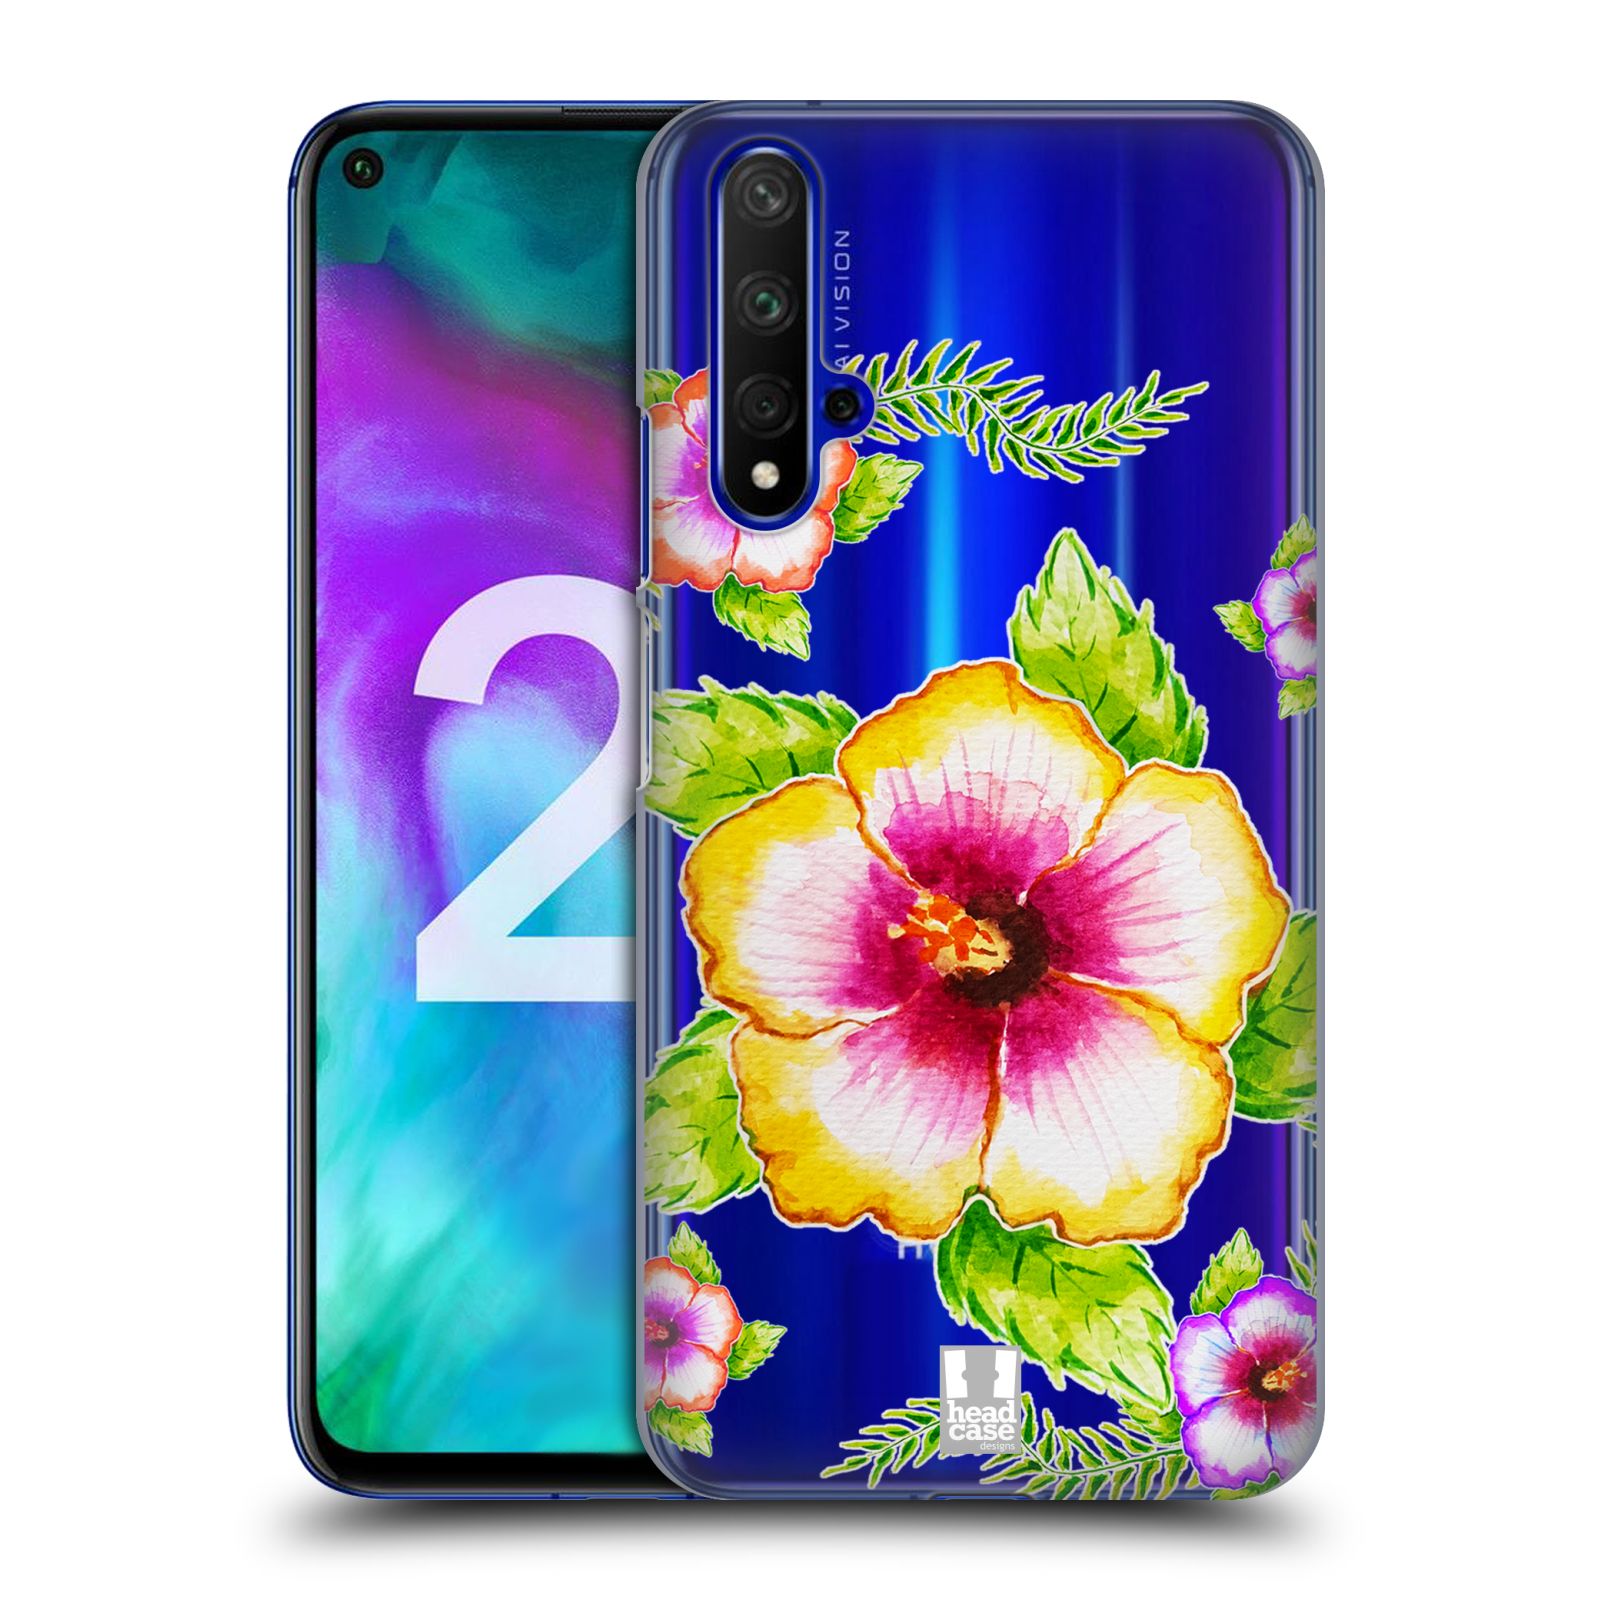 Pouzdro na mobil Honor 20 - HEAD CASE - Květina Ibišek vodní barvy